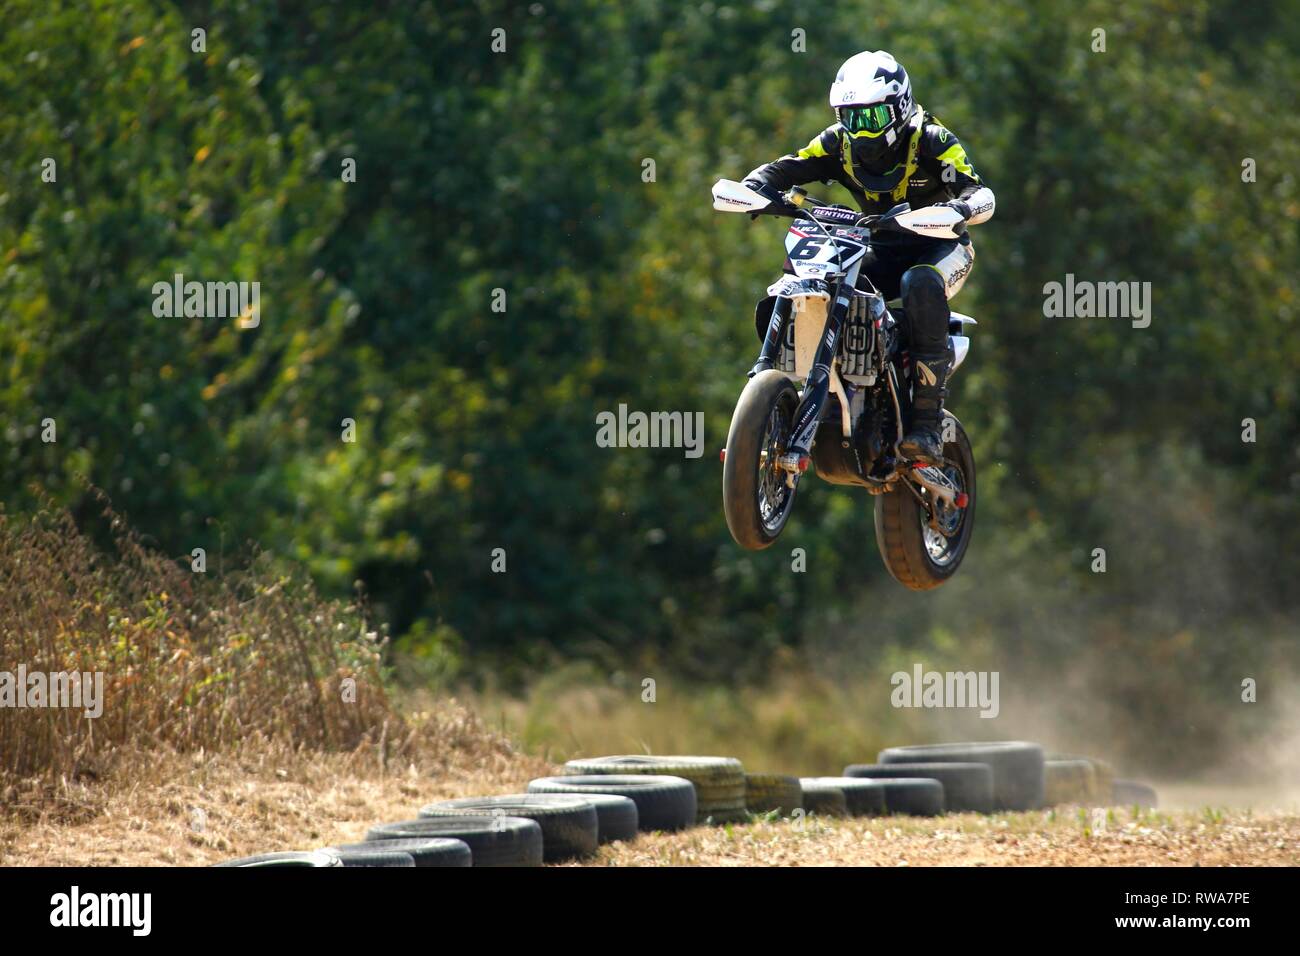 Course de moto avec des obstacles, République Tchèque Banque D'Images